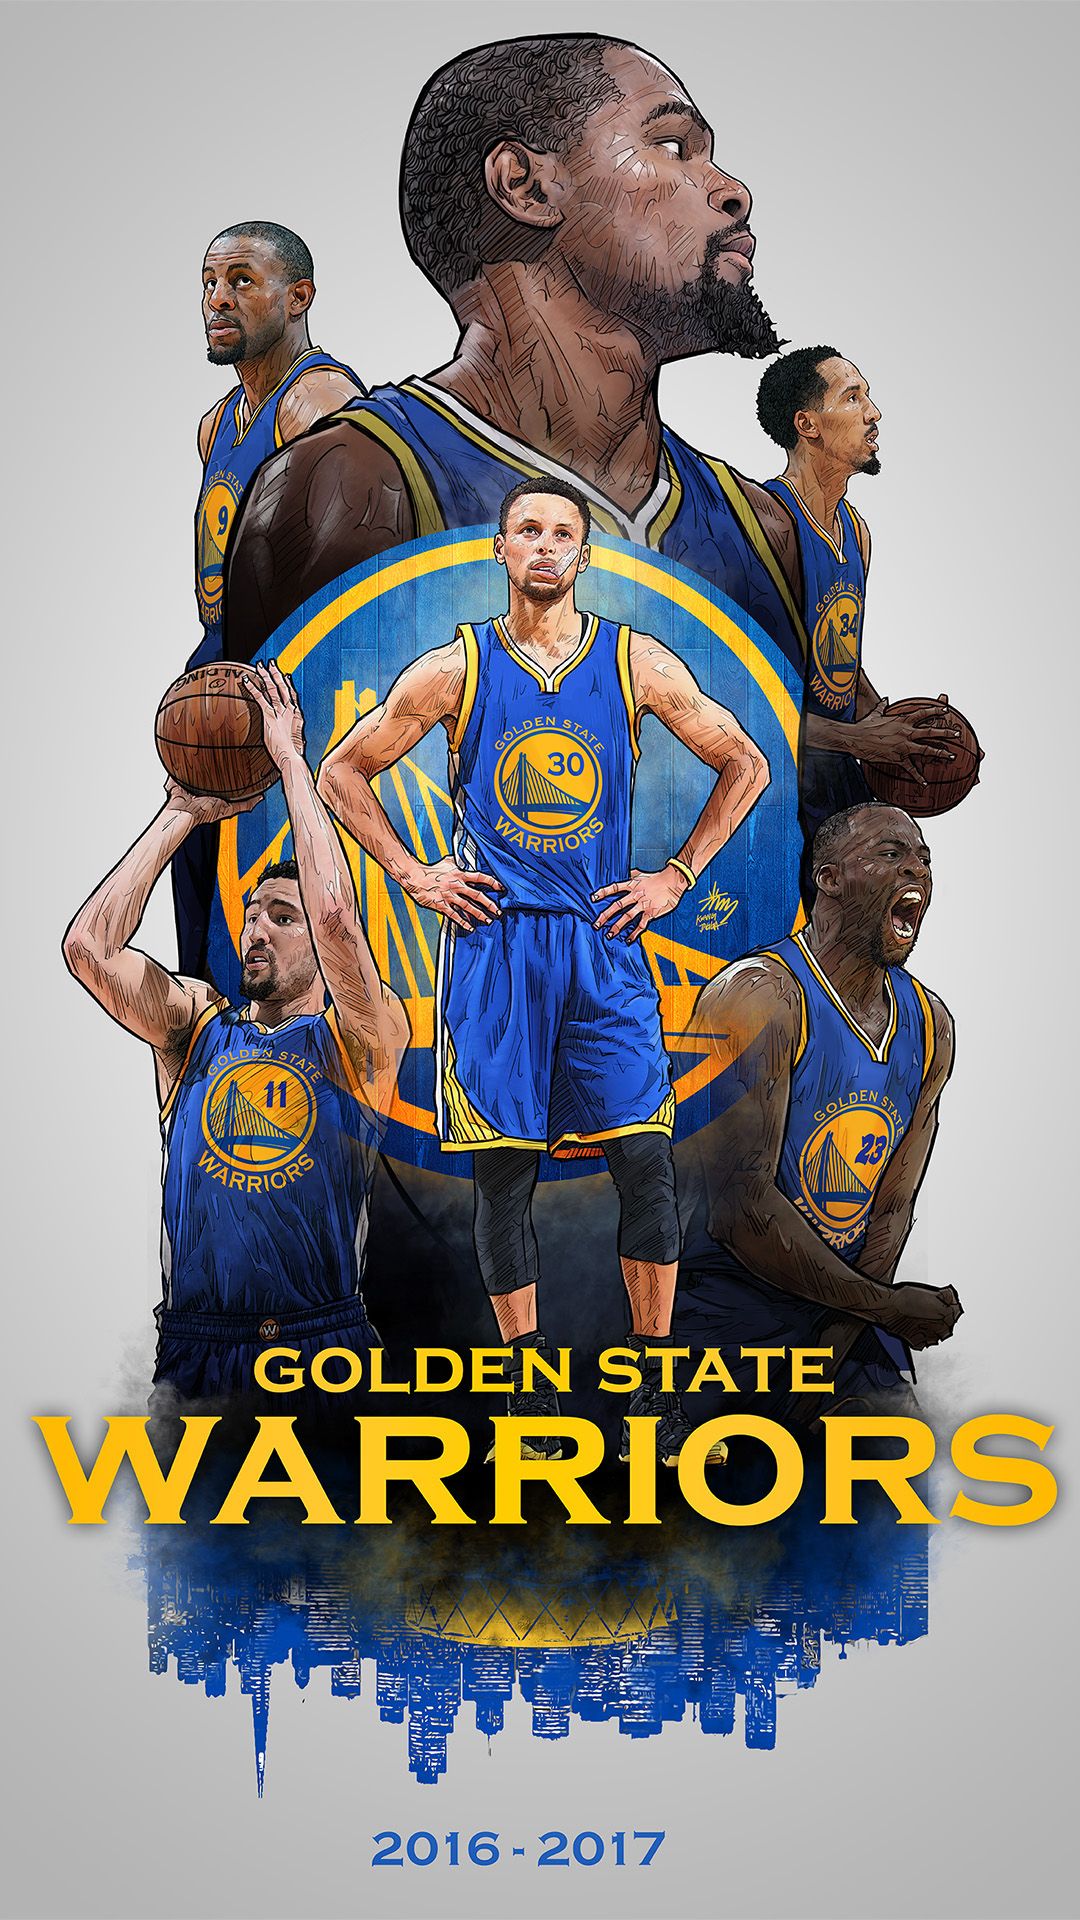 Golden State Warriors Wallpaper Hd 2017 - HD Wallpaper 